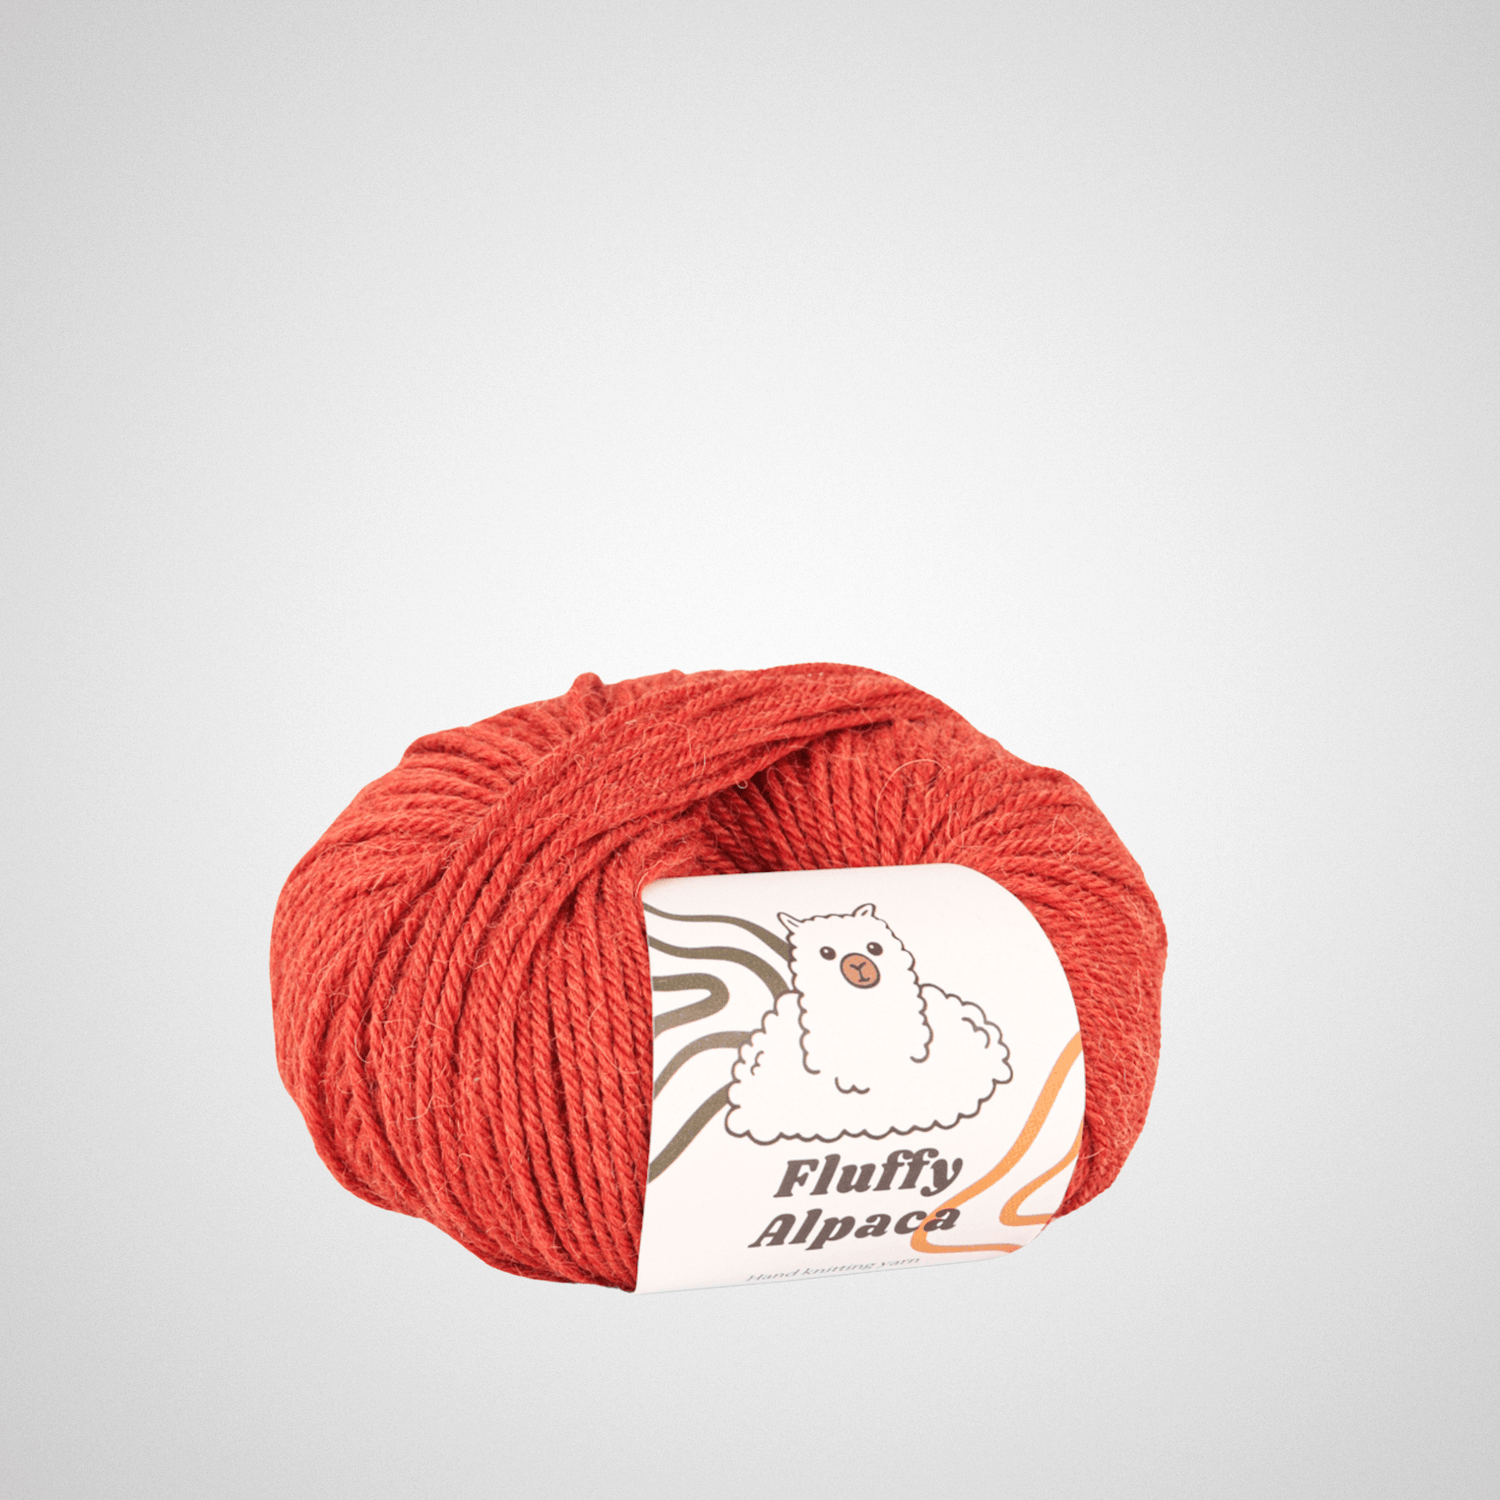 Fluffy Alpaca - Knitting yarn - 100% alpaca wool - Orange